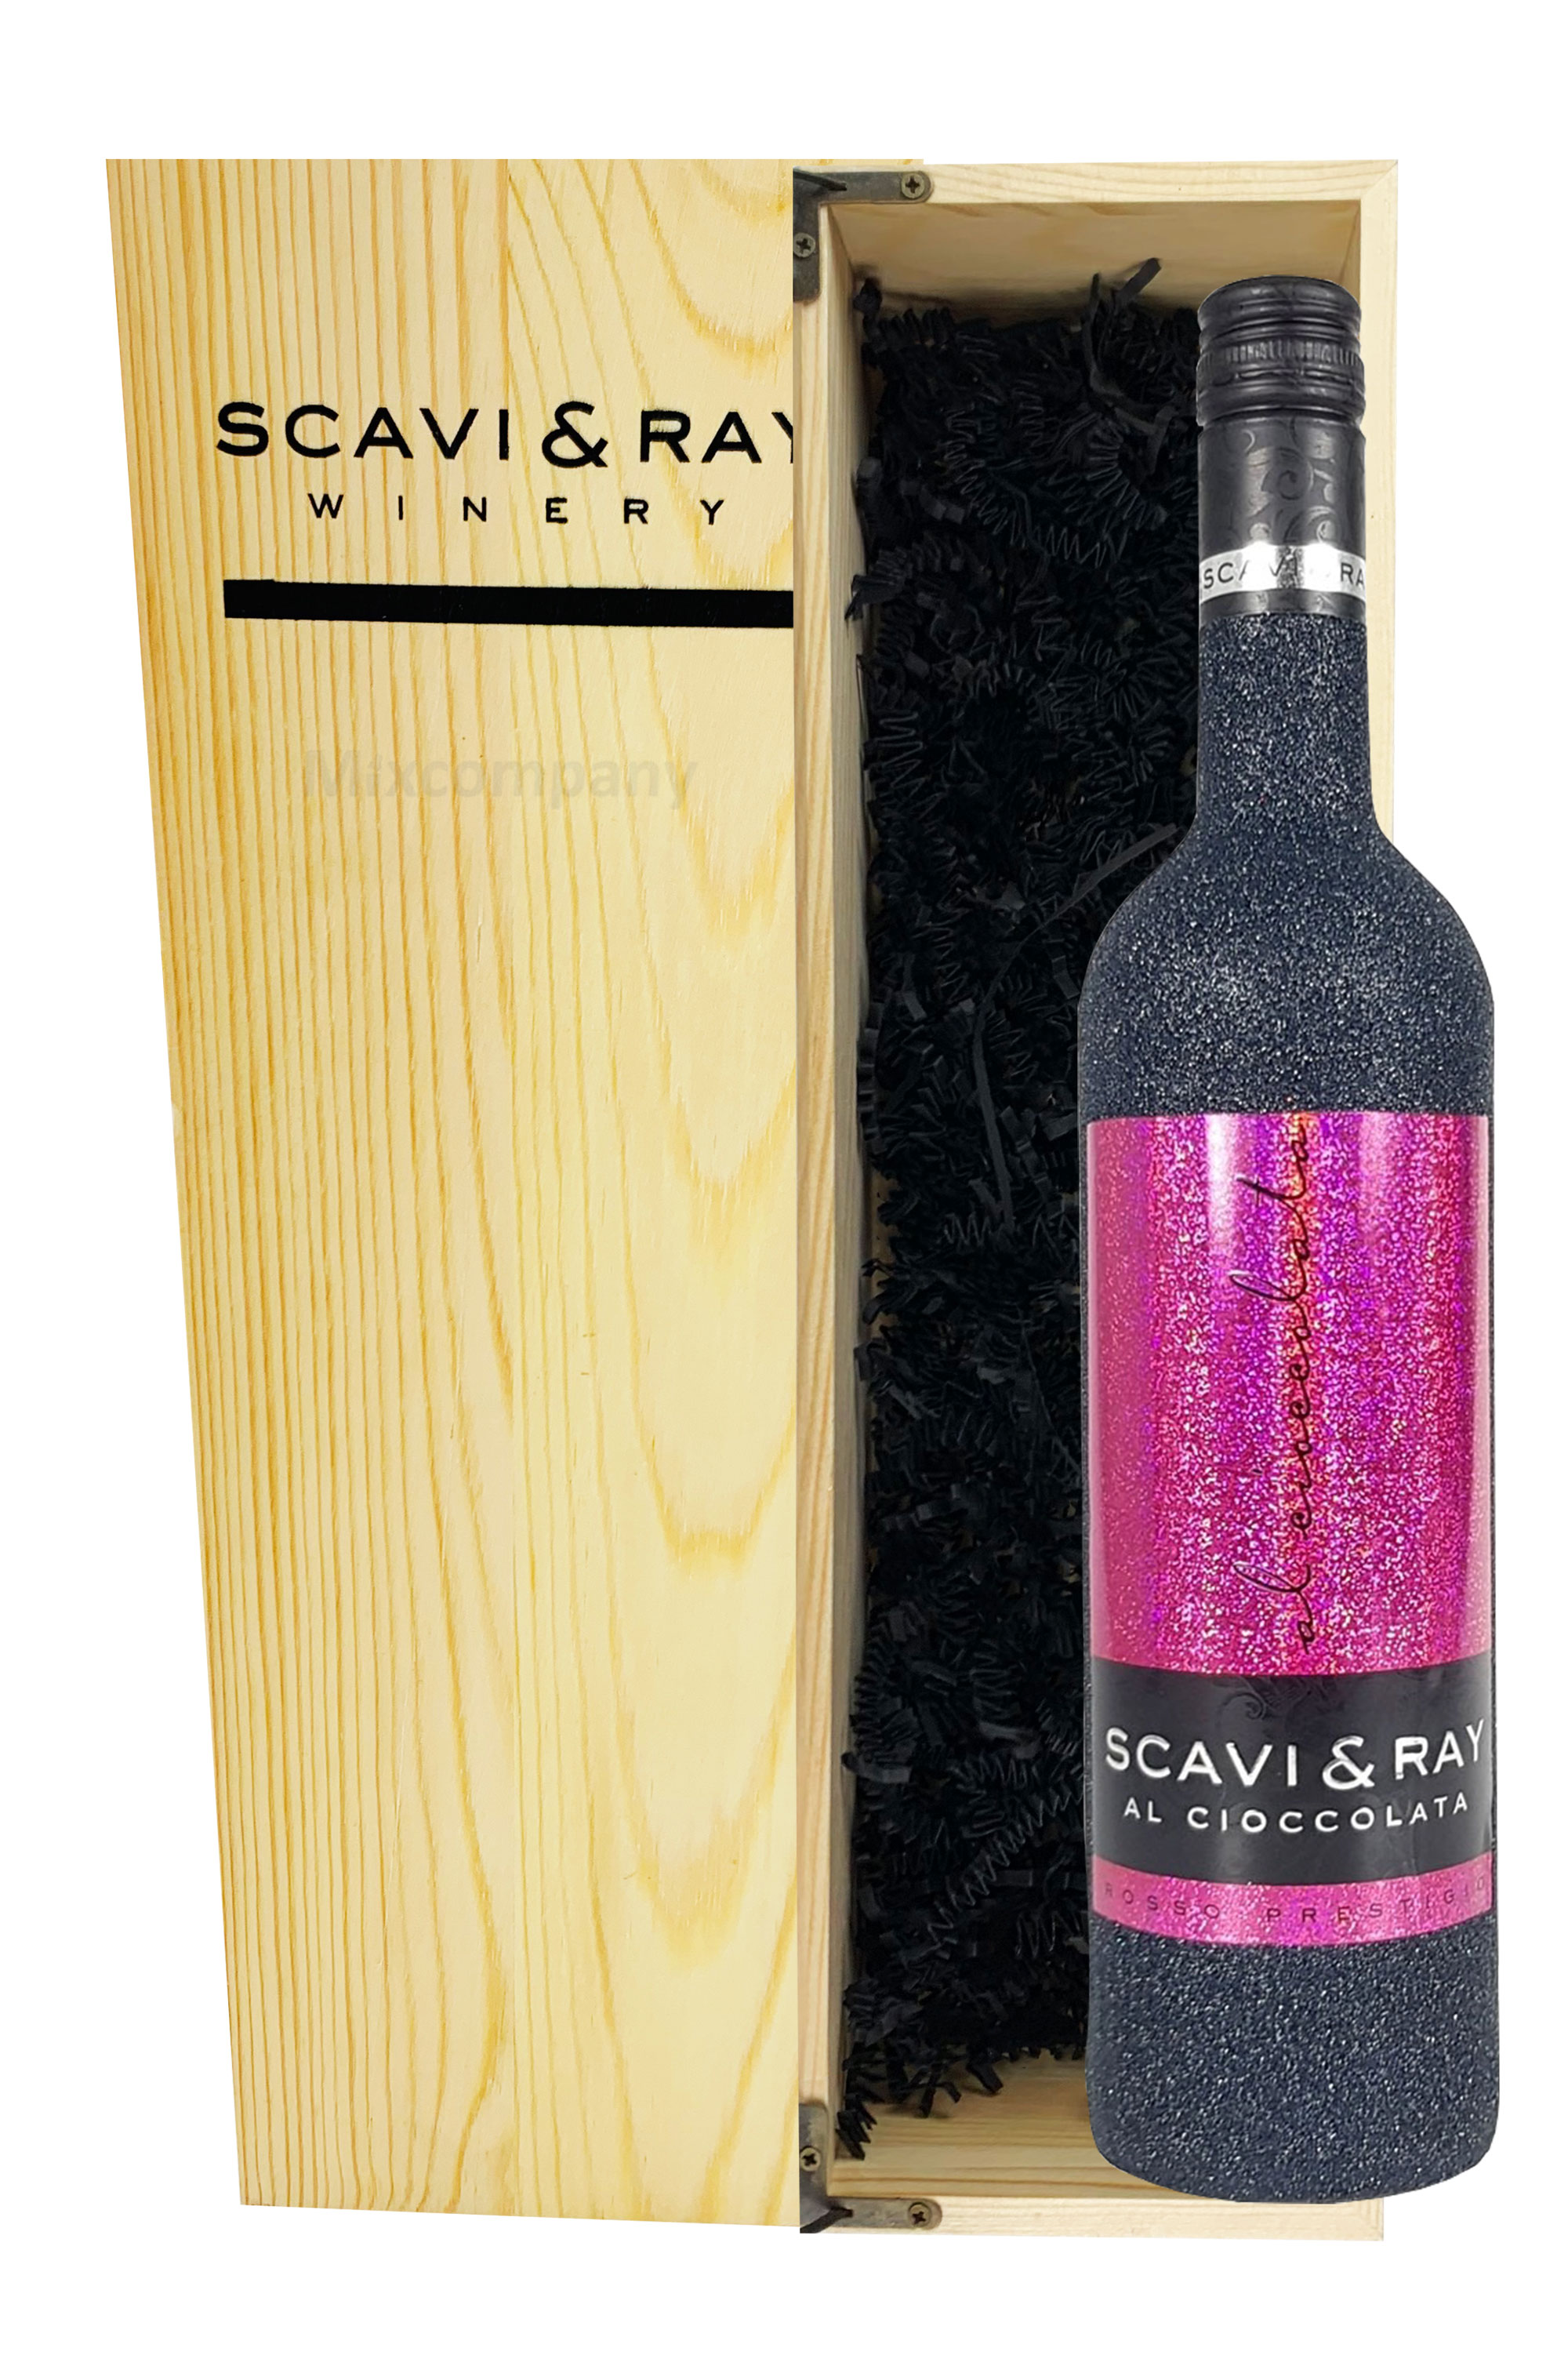 Scavi & Ray Giftbox Geschenkset - Scavi & Ray Al Cioccolata Rotwein Cuvèe 0,75l (10% Vol) Bling Bling Glitzer Glitzerflasche schwarz mit Holzkiste - [Enthält Sulfite]